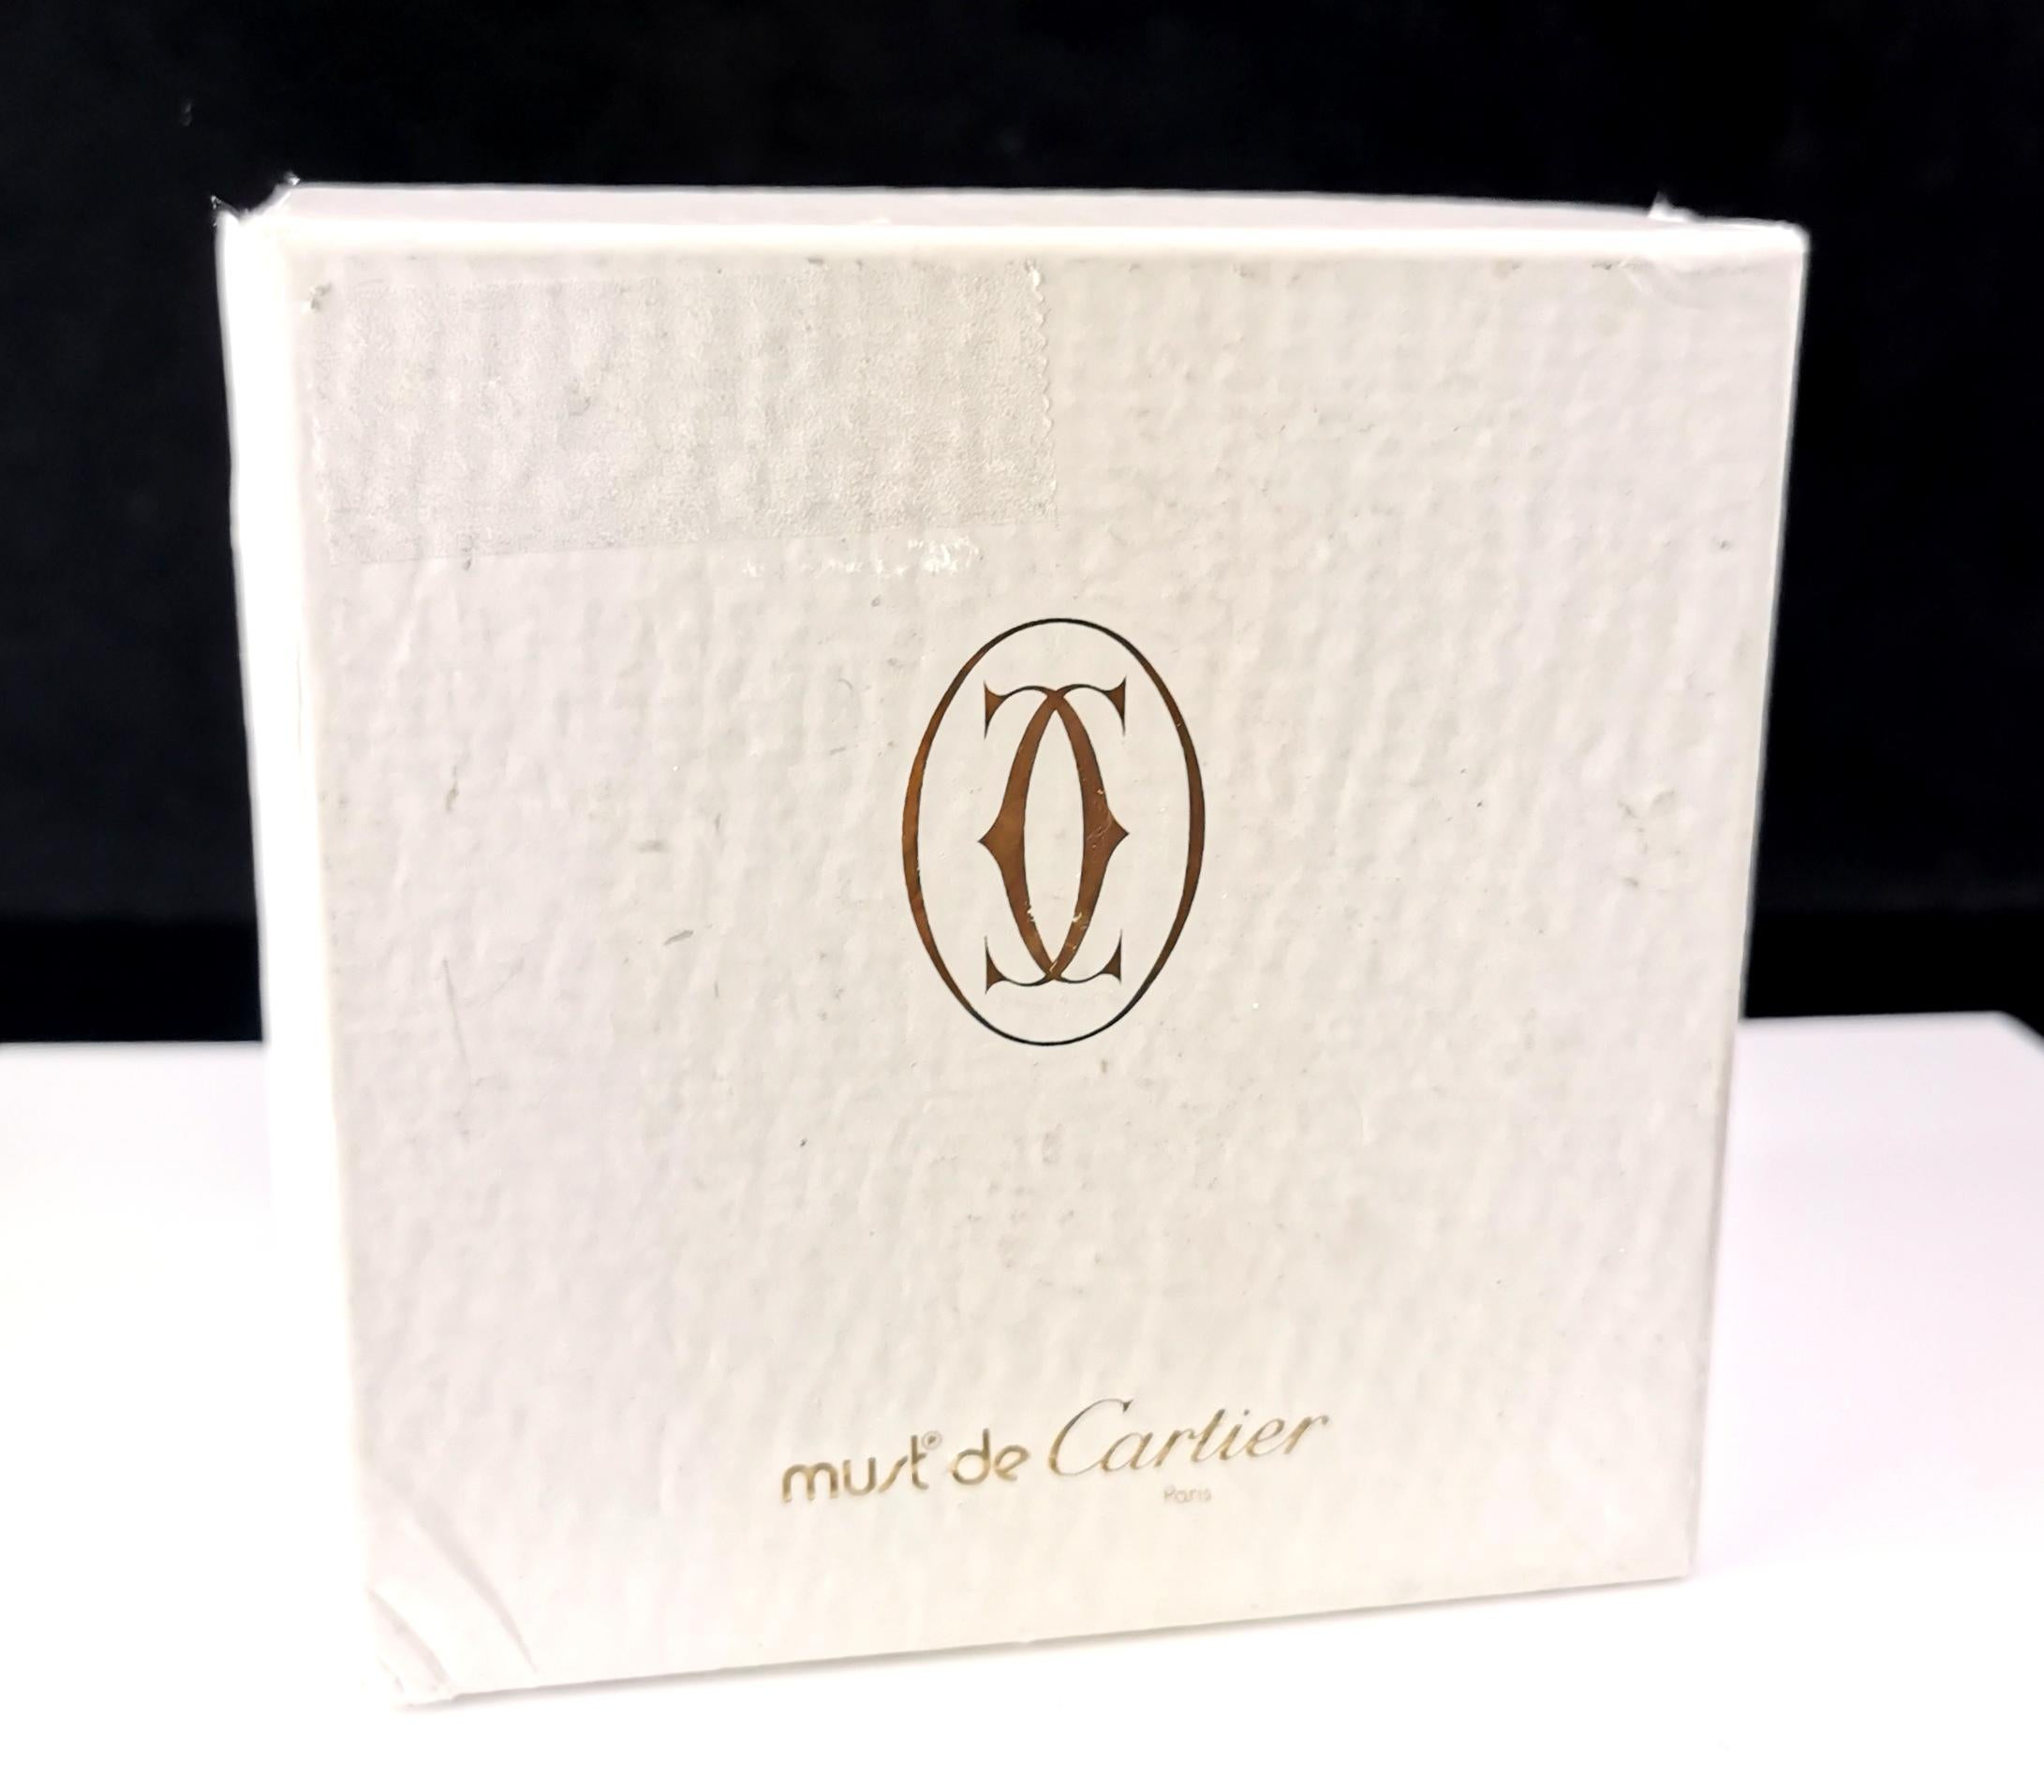 Ein schönes Vintage Must de Cartier Kristall Tintenfass.

Es ist ein melonenförmiges Tintenfass mit einem klobigen, gerippten Kristallkorpus, der das Licht wunderschön reflektiert. Auf der Vorderseite ist das Branding von Cartier in Gold